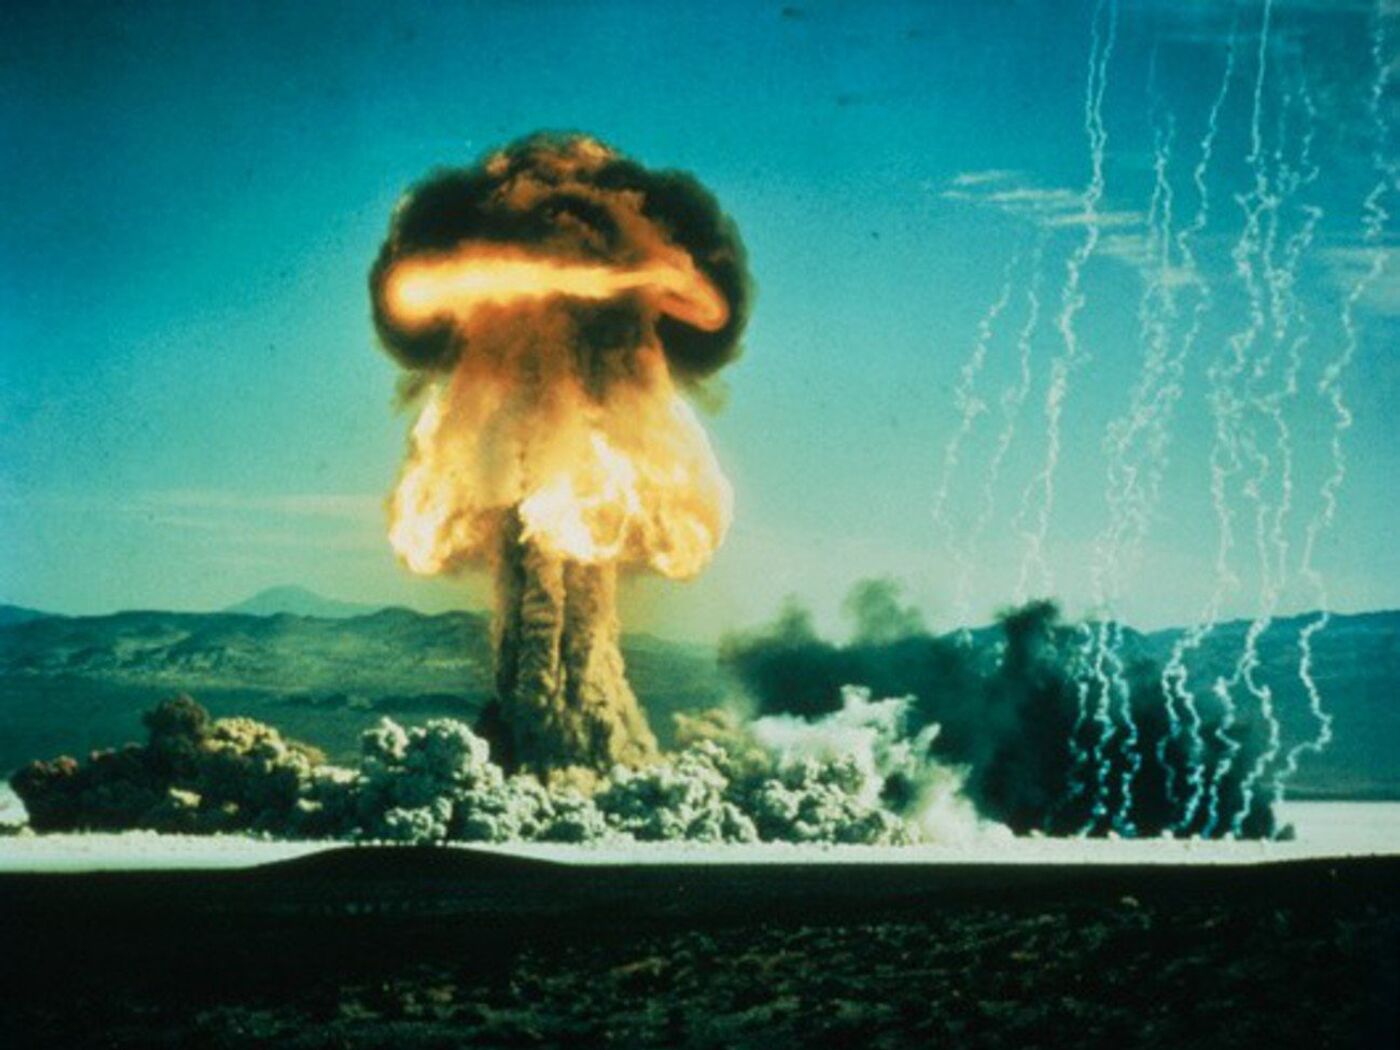 Senado russo aprova saída do tratado que proíbe testes nucleares, Rússia